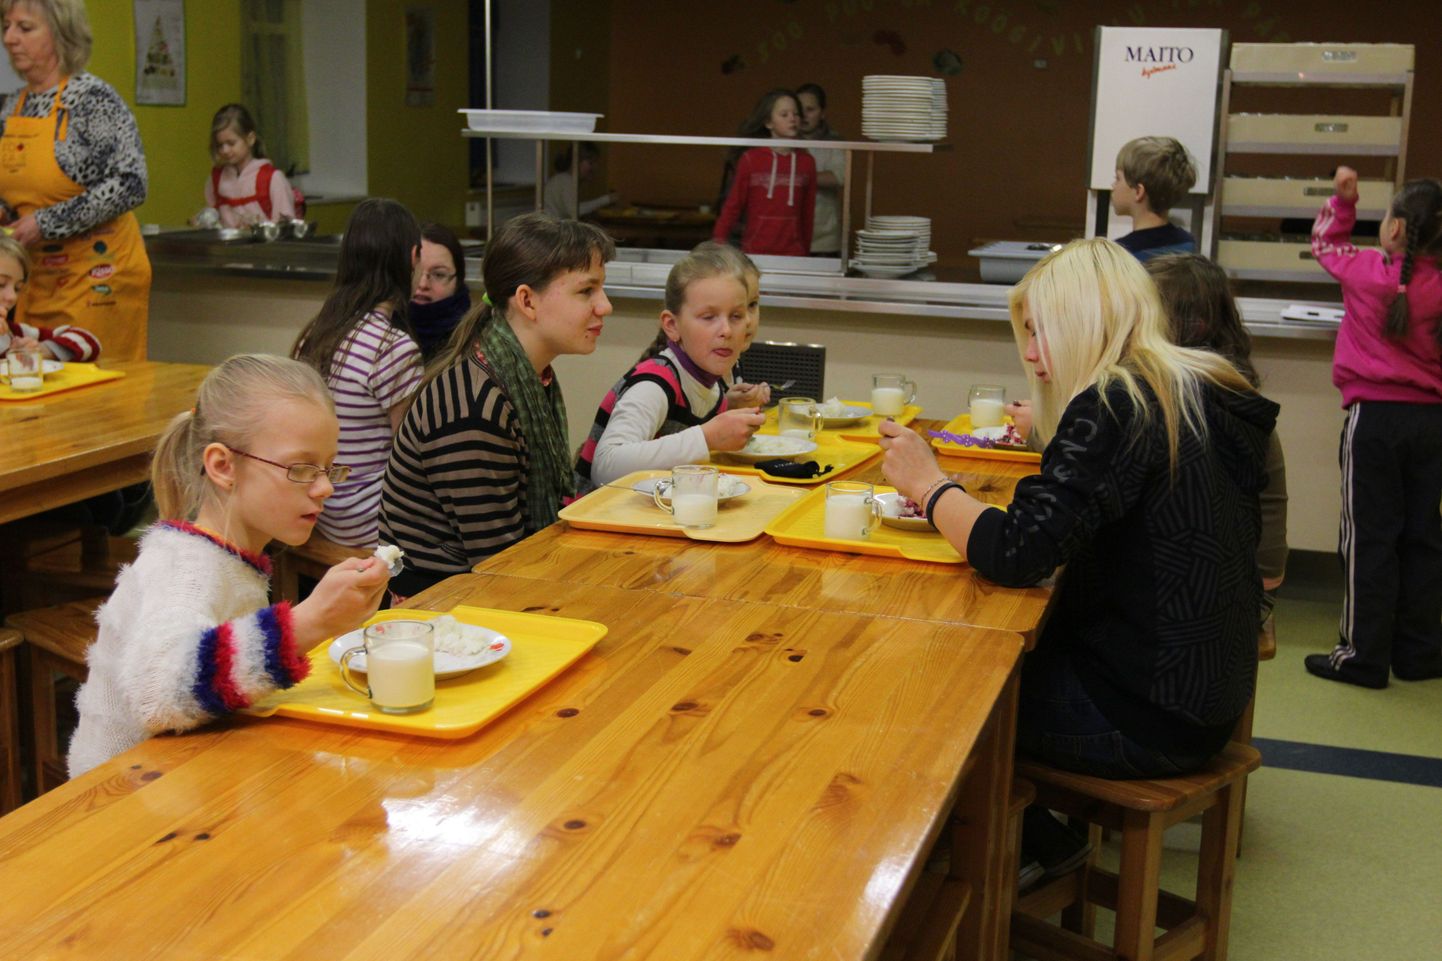 Valga linnavõim peab oluliseks, et koolilapsed hommikuputru süüa saaks. Nii suunati reedel volikogus kinnituse saanud lisaeelarvest hariduse reale lisaks 3000 eurot, et kindlustada koolides pudru pakkumine aasta lõpuni.